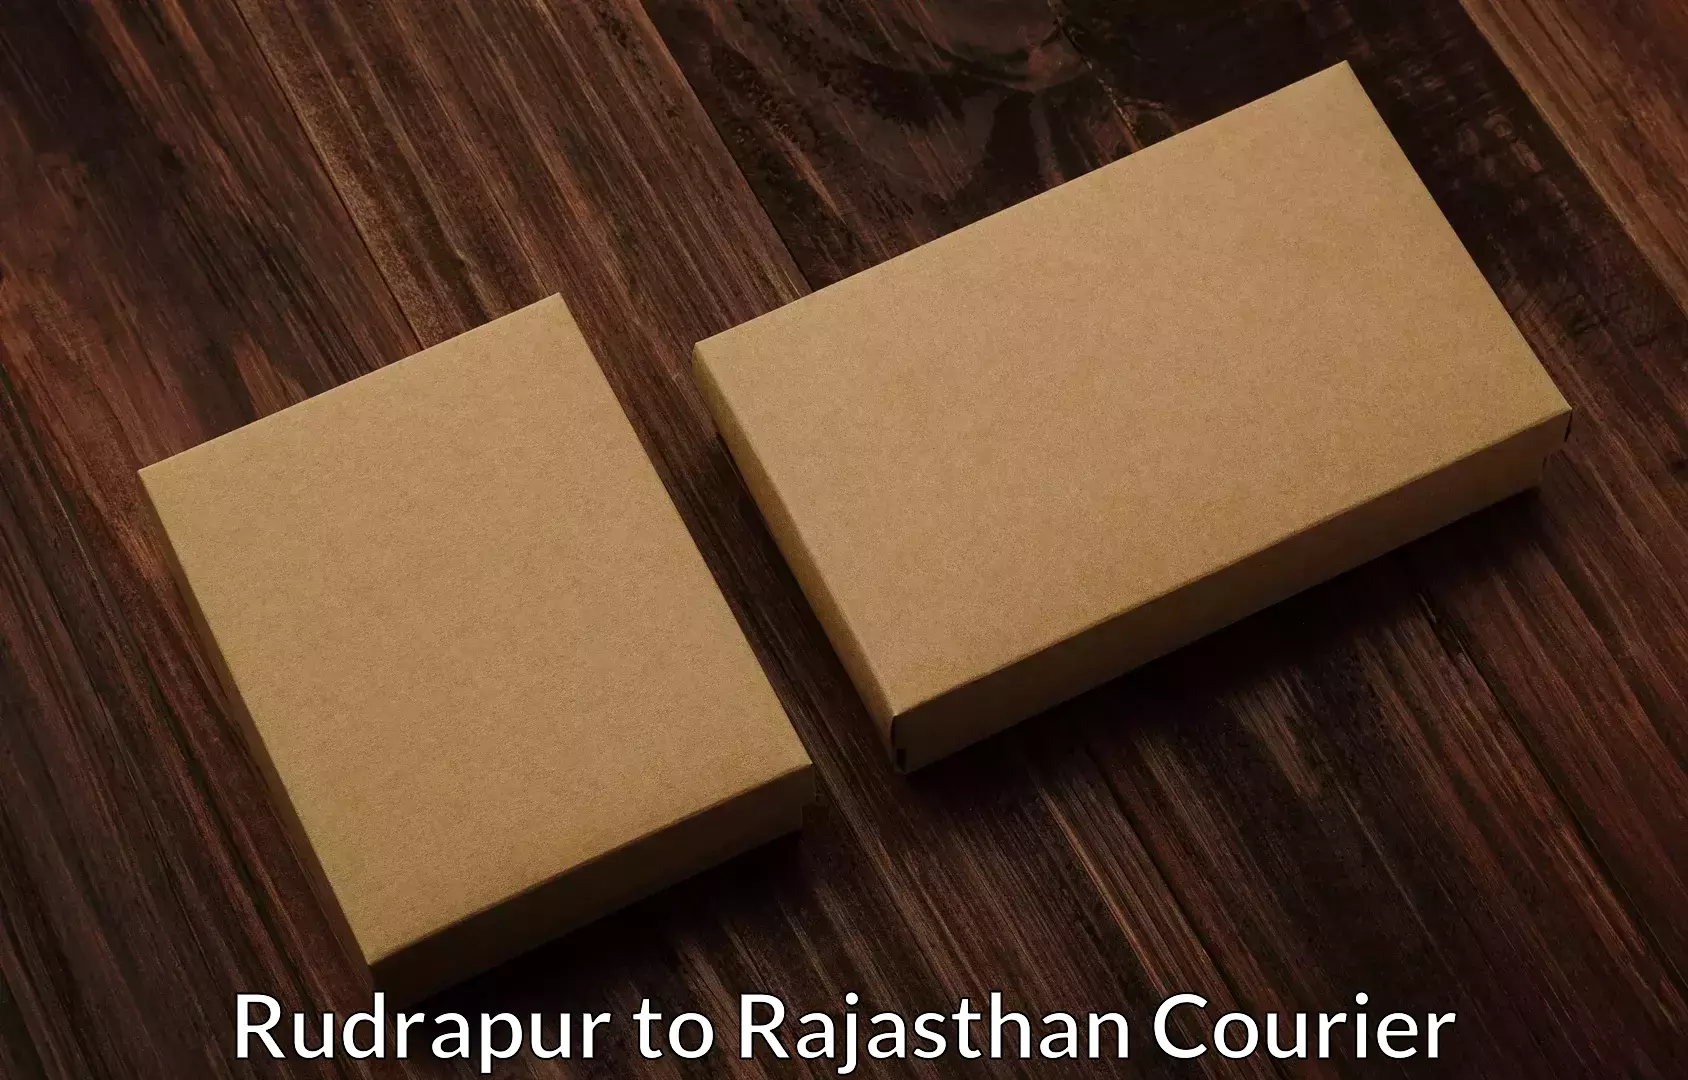 Furniture moving experts Rudrapur to Jawahar Nagar